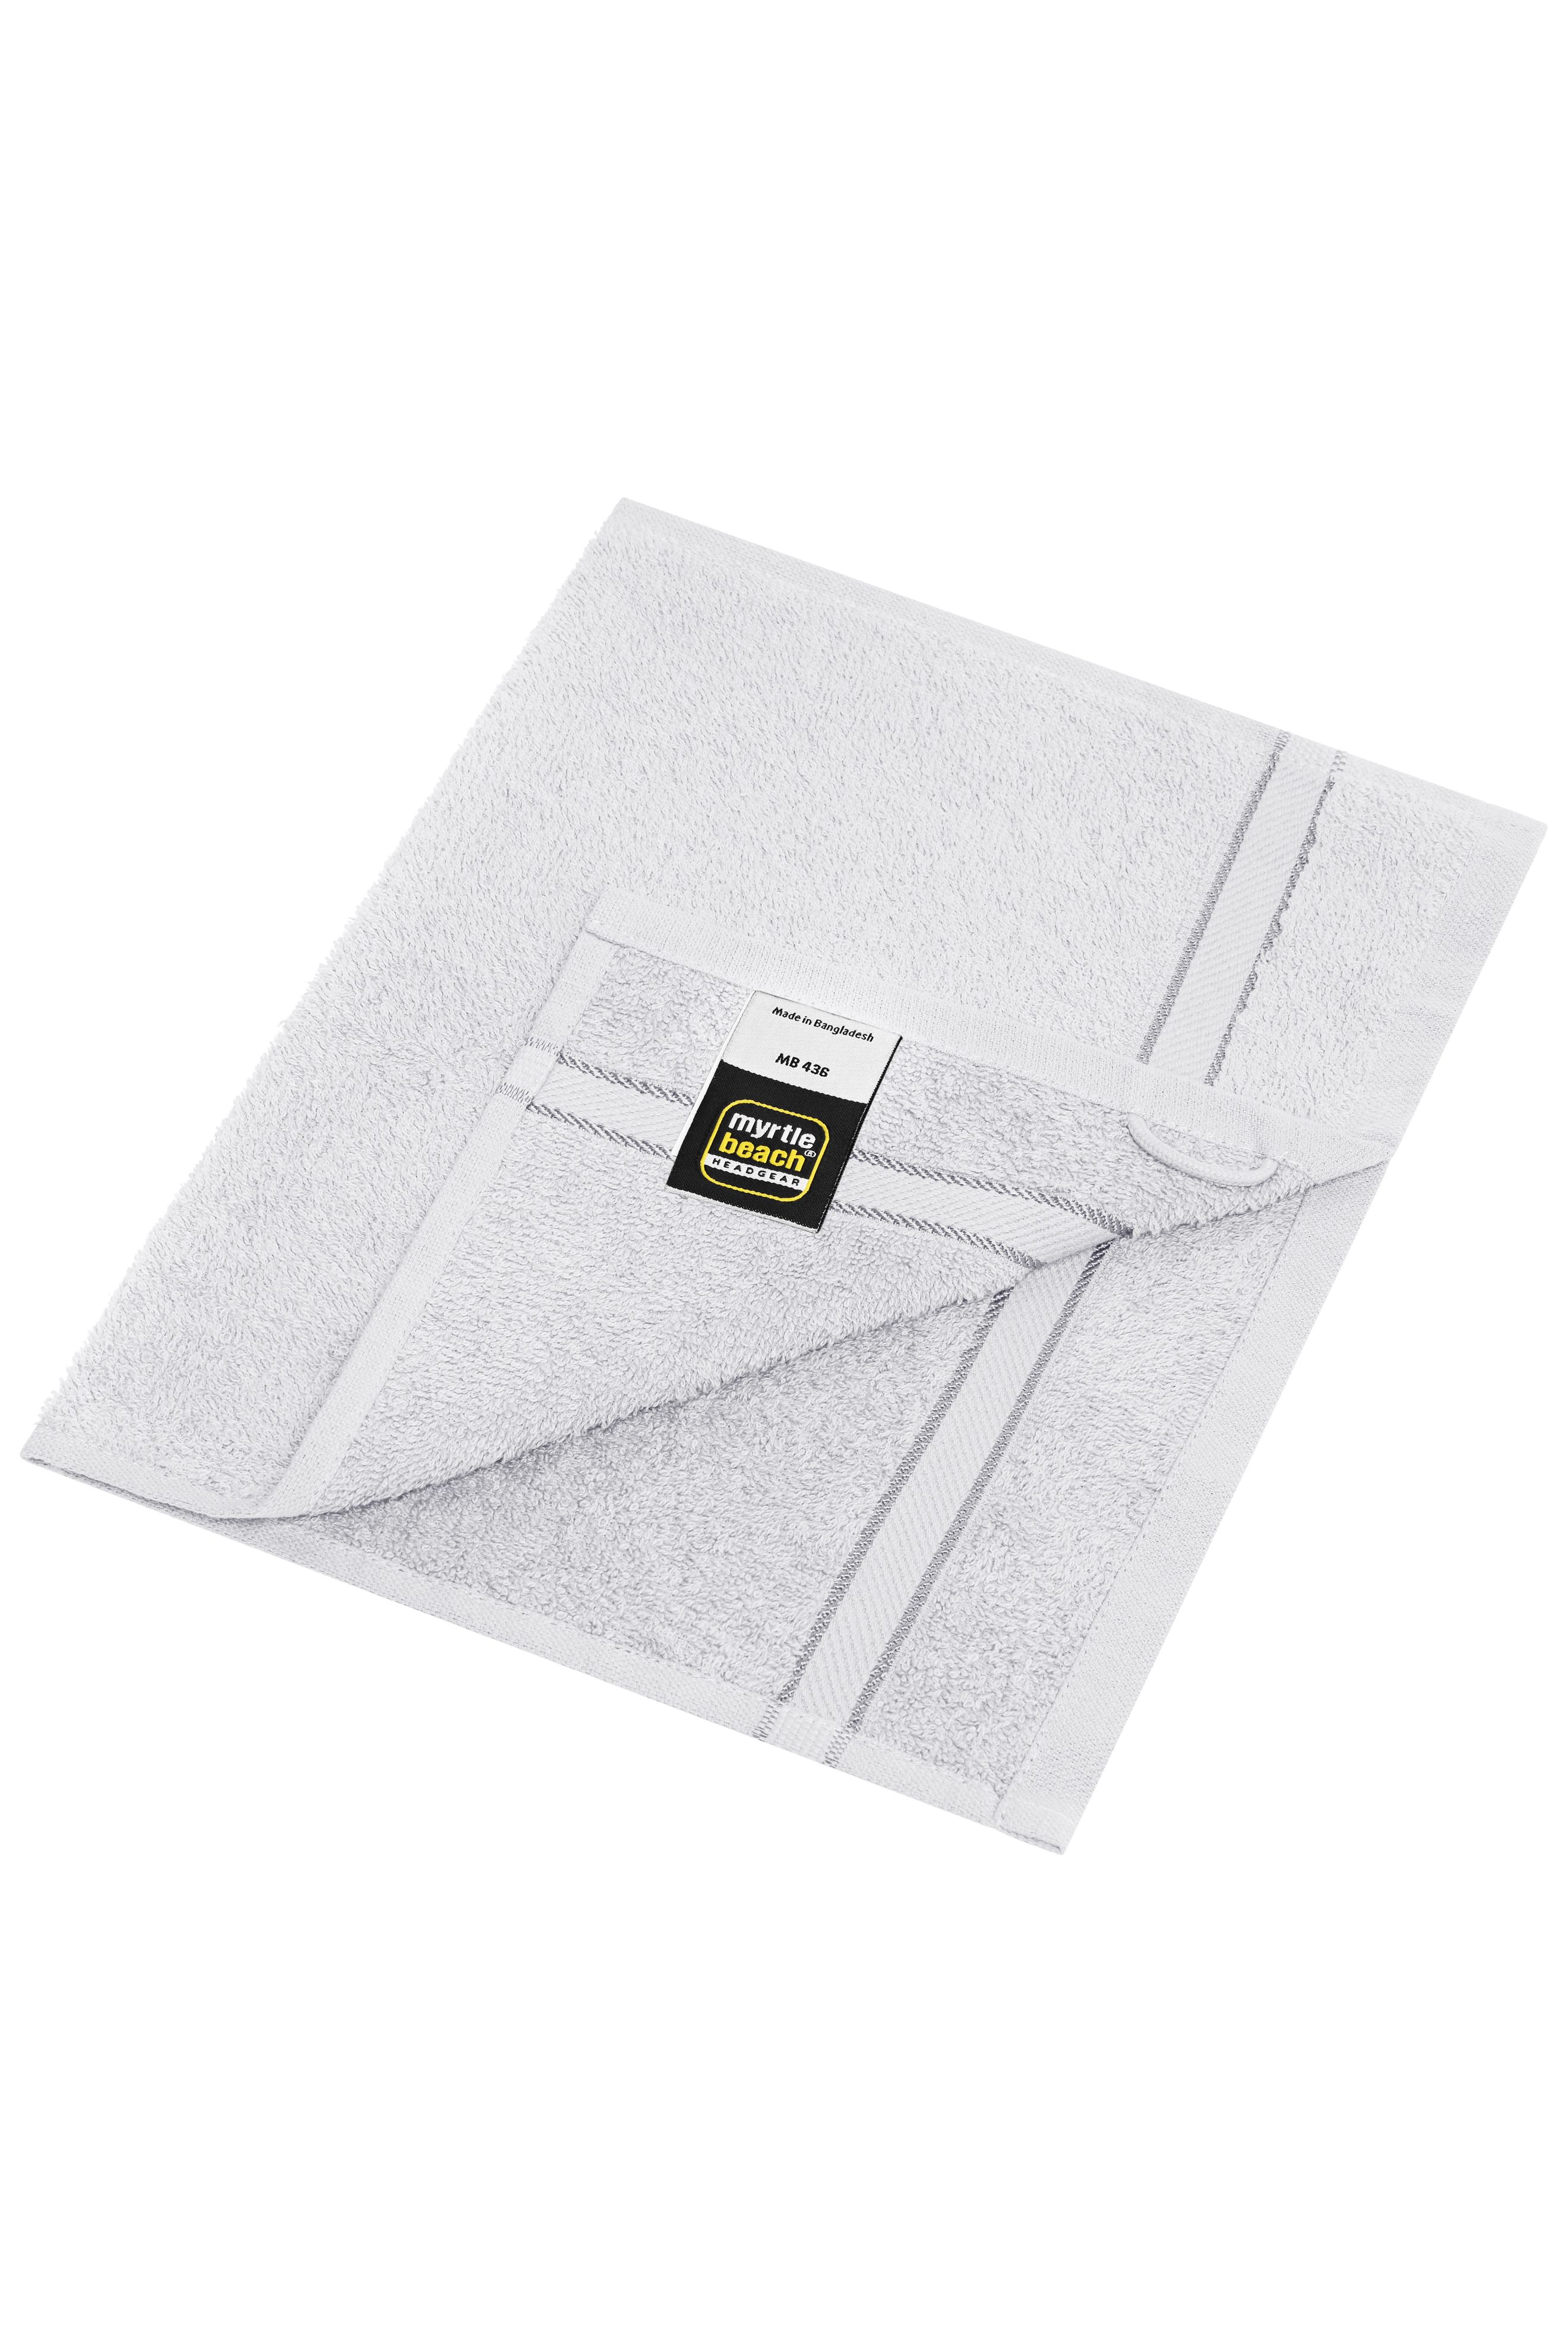 Guest Towel MB436 Gästehandtuch im dezenten Design